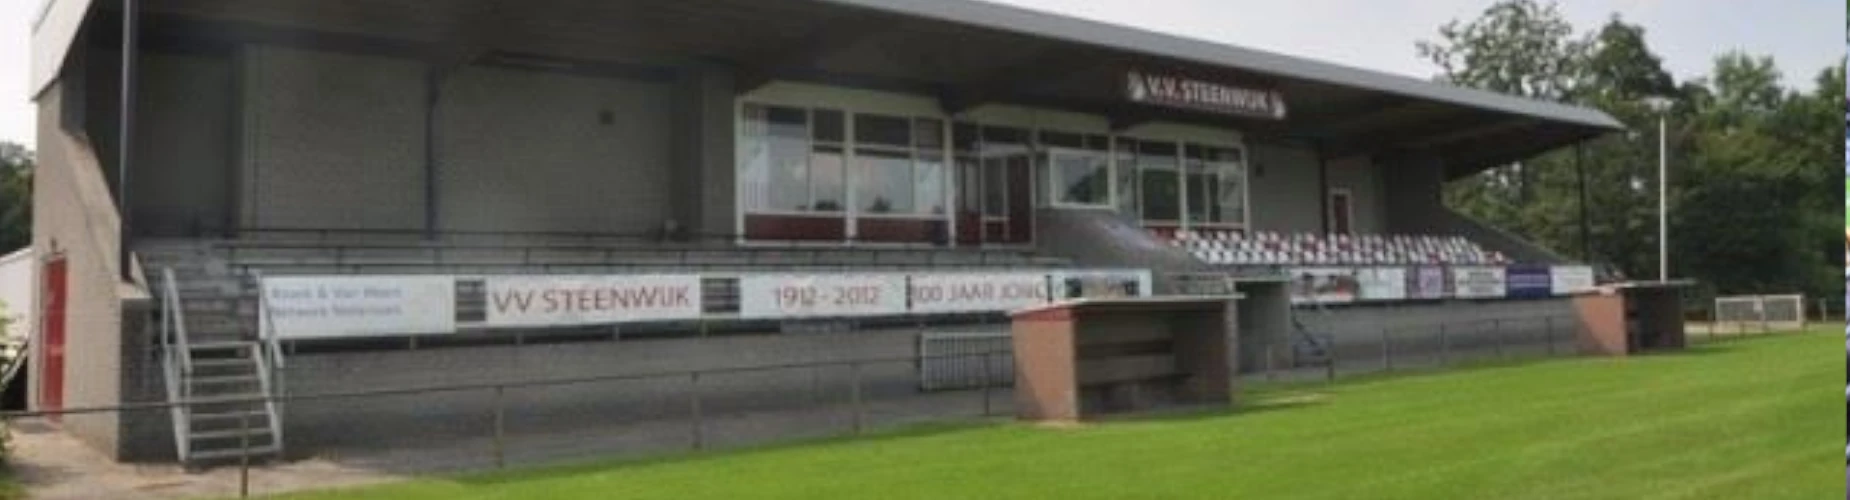 Banner - VV Steenwijk - Steenwijk